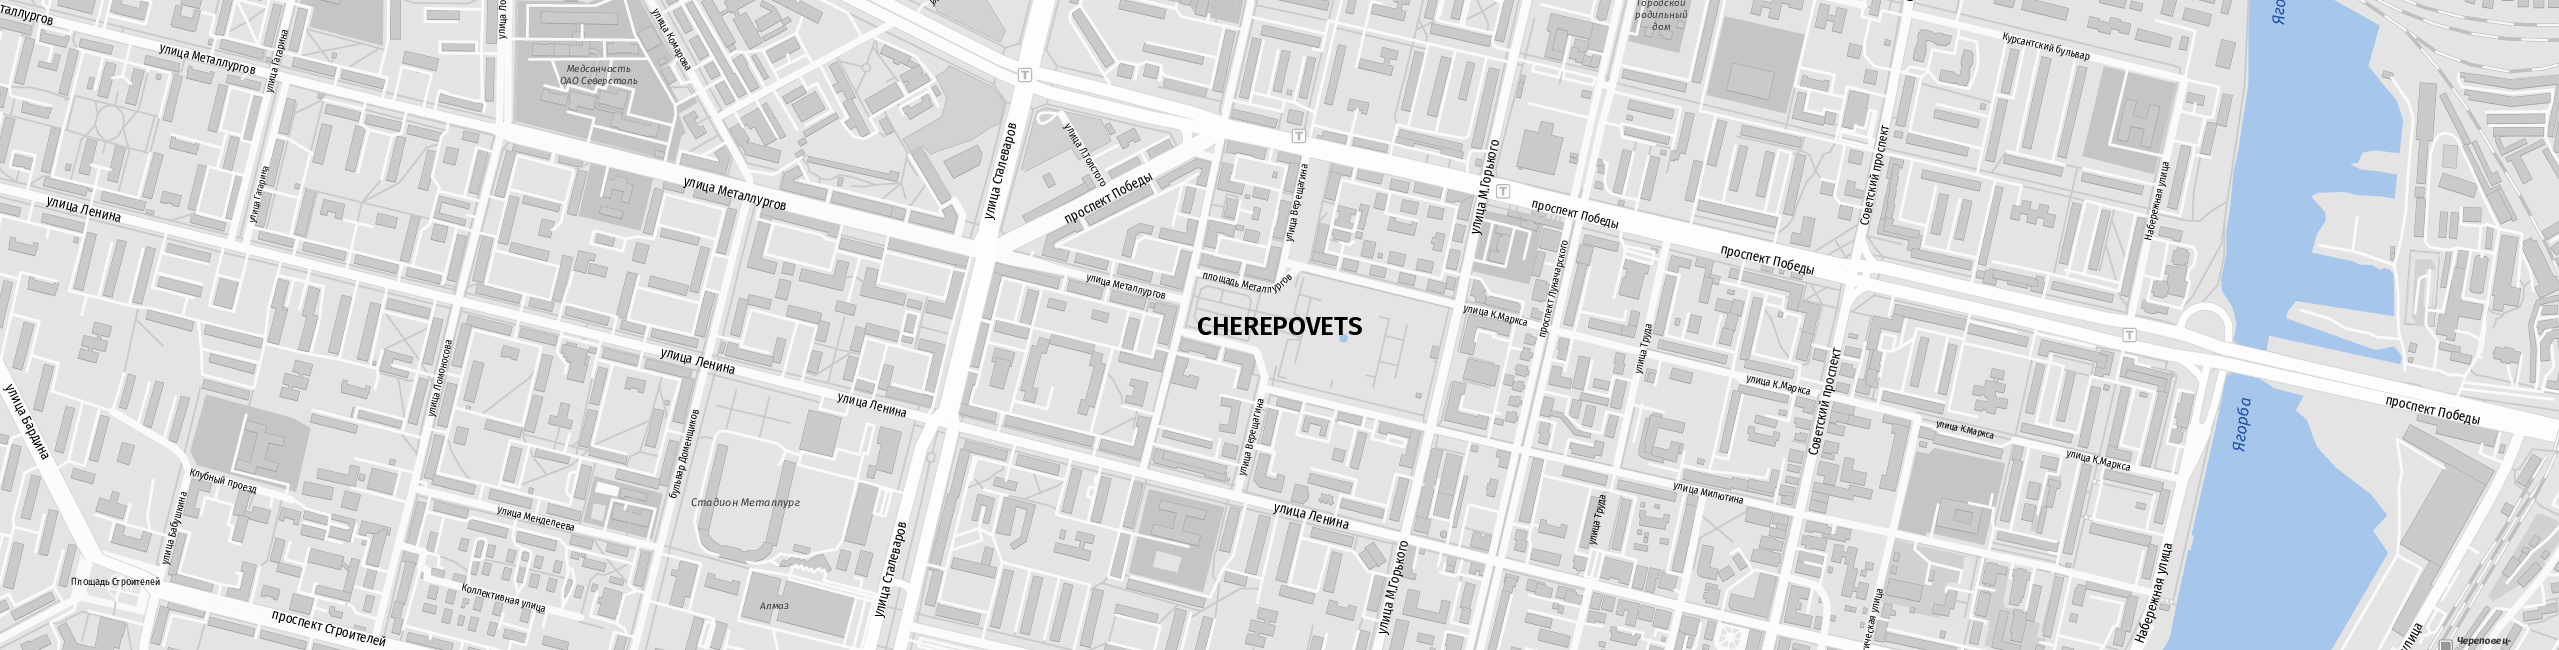 Stadtplan Cherepovets zum Downloaden.